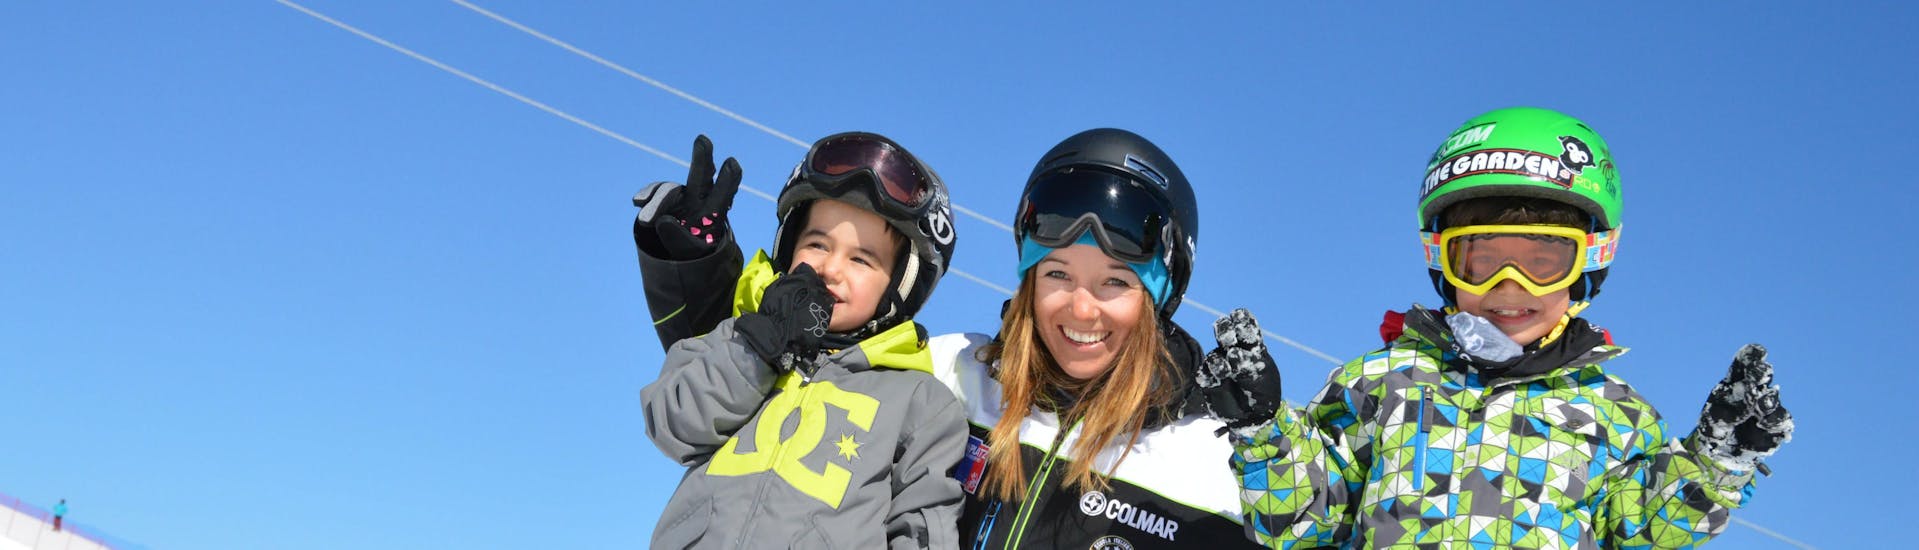 Deux enfants heureux pendant les cours particuliers de ski pour enfants et adolescents avec Cimaschool Plan de Corones.